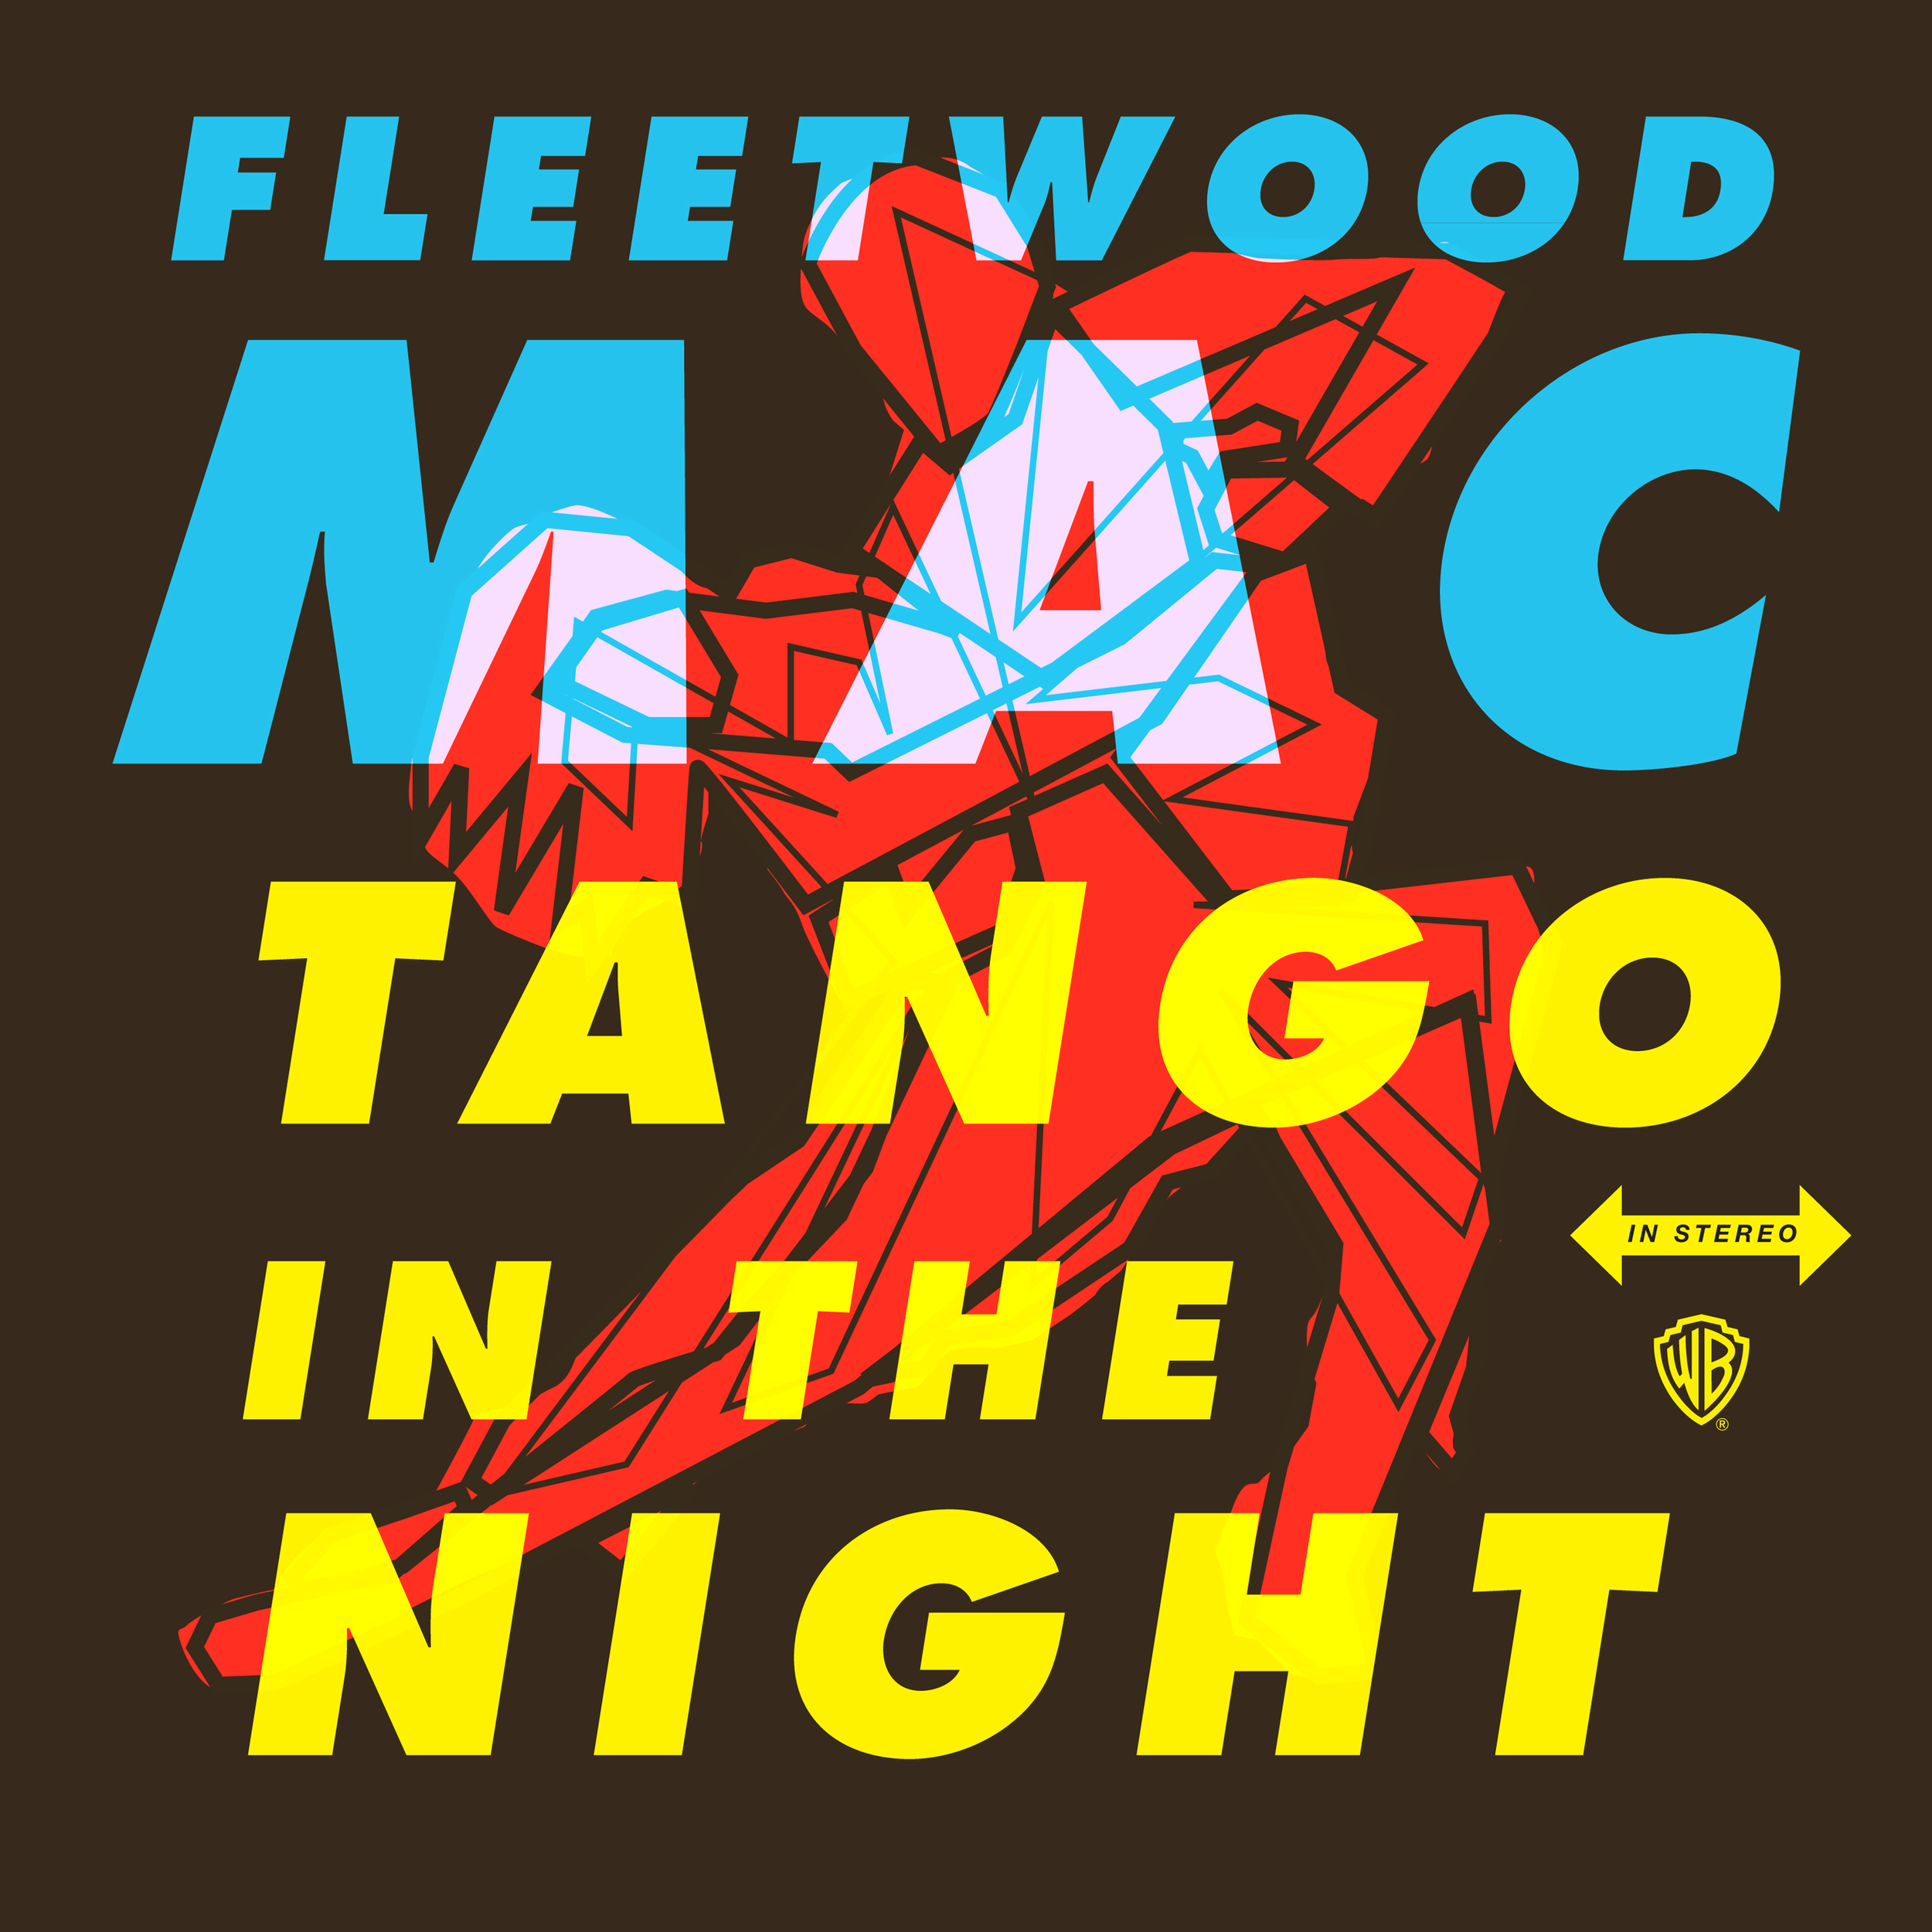 Fleetwood Mac “Tango in the Night”